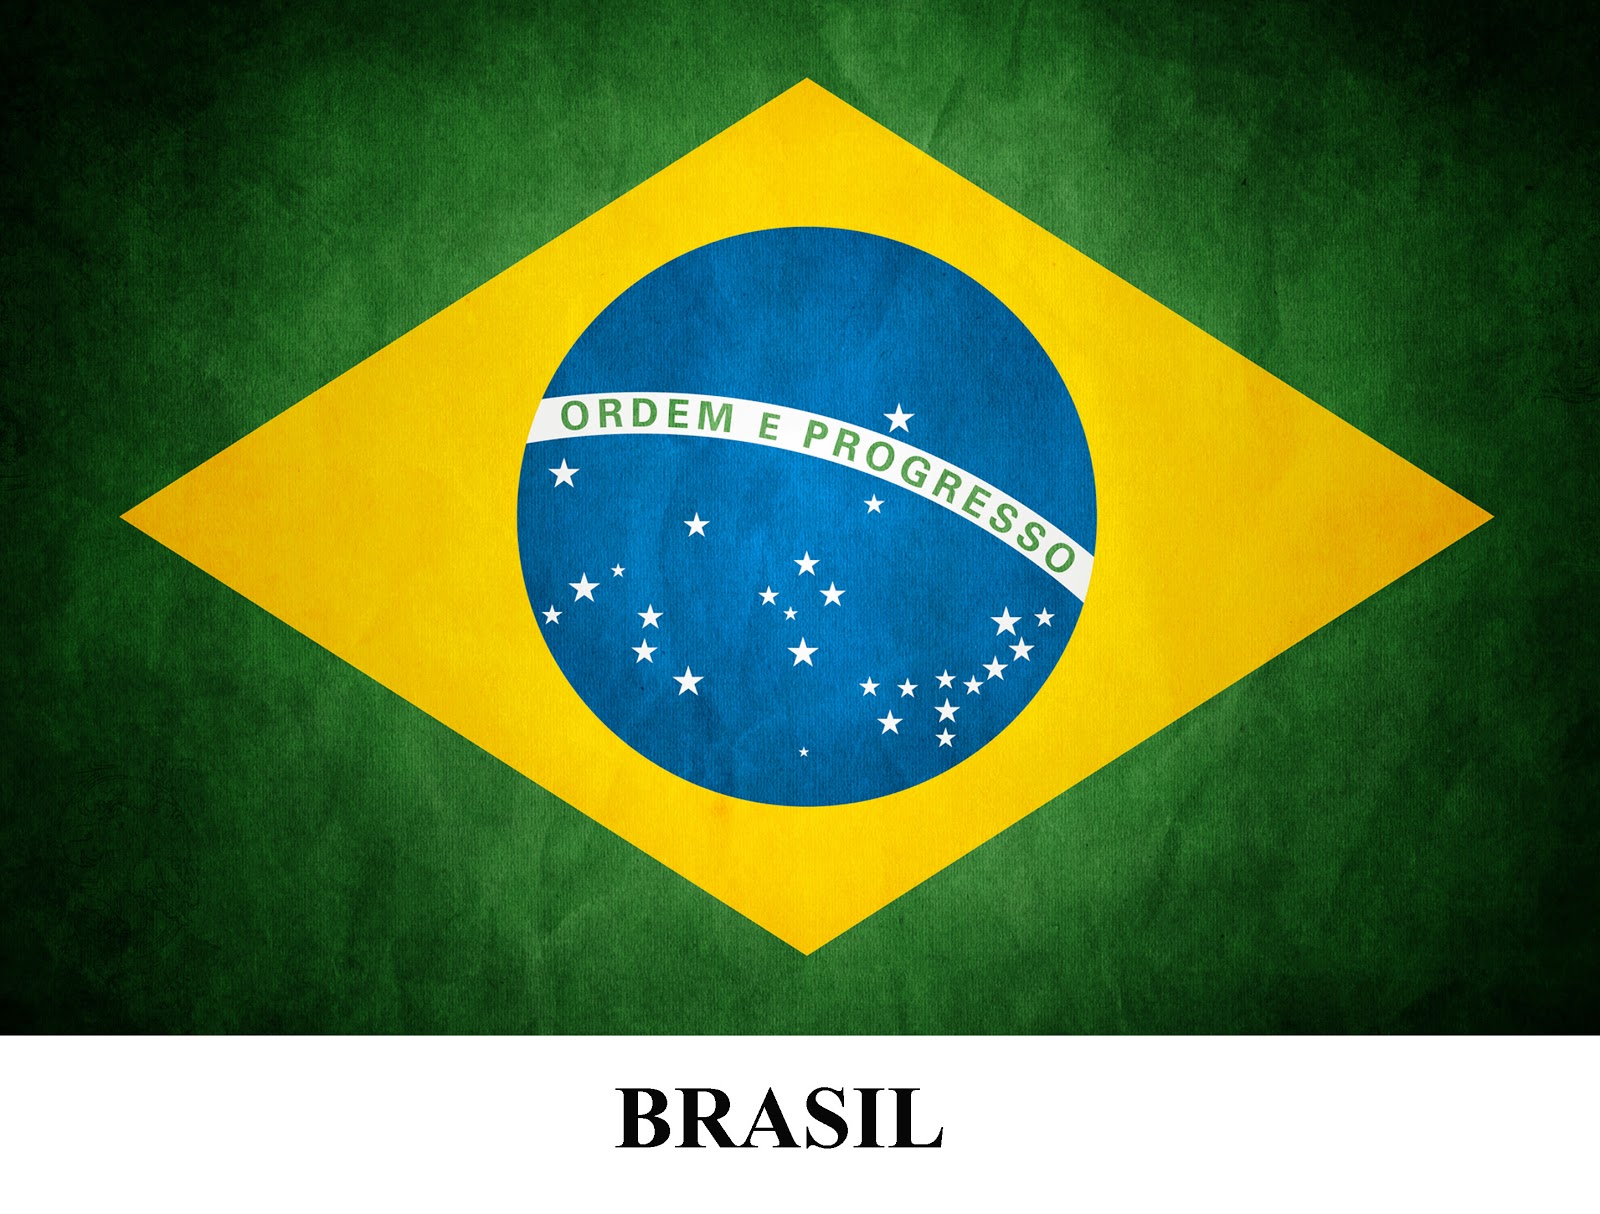 Bandeiras dos Países Participantes Copa do Mundo 2014 no Brasil